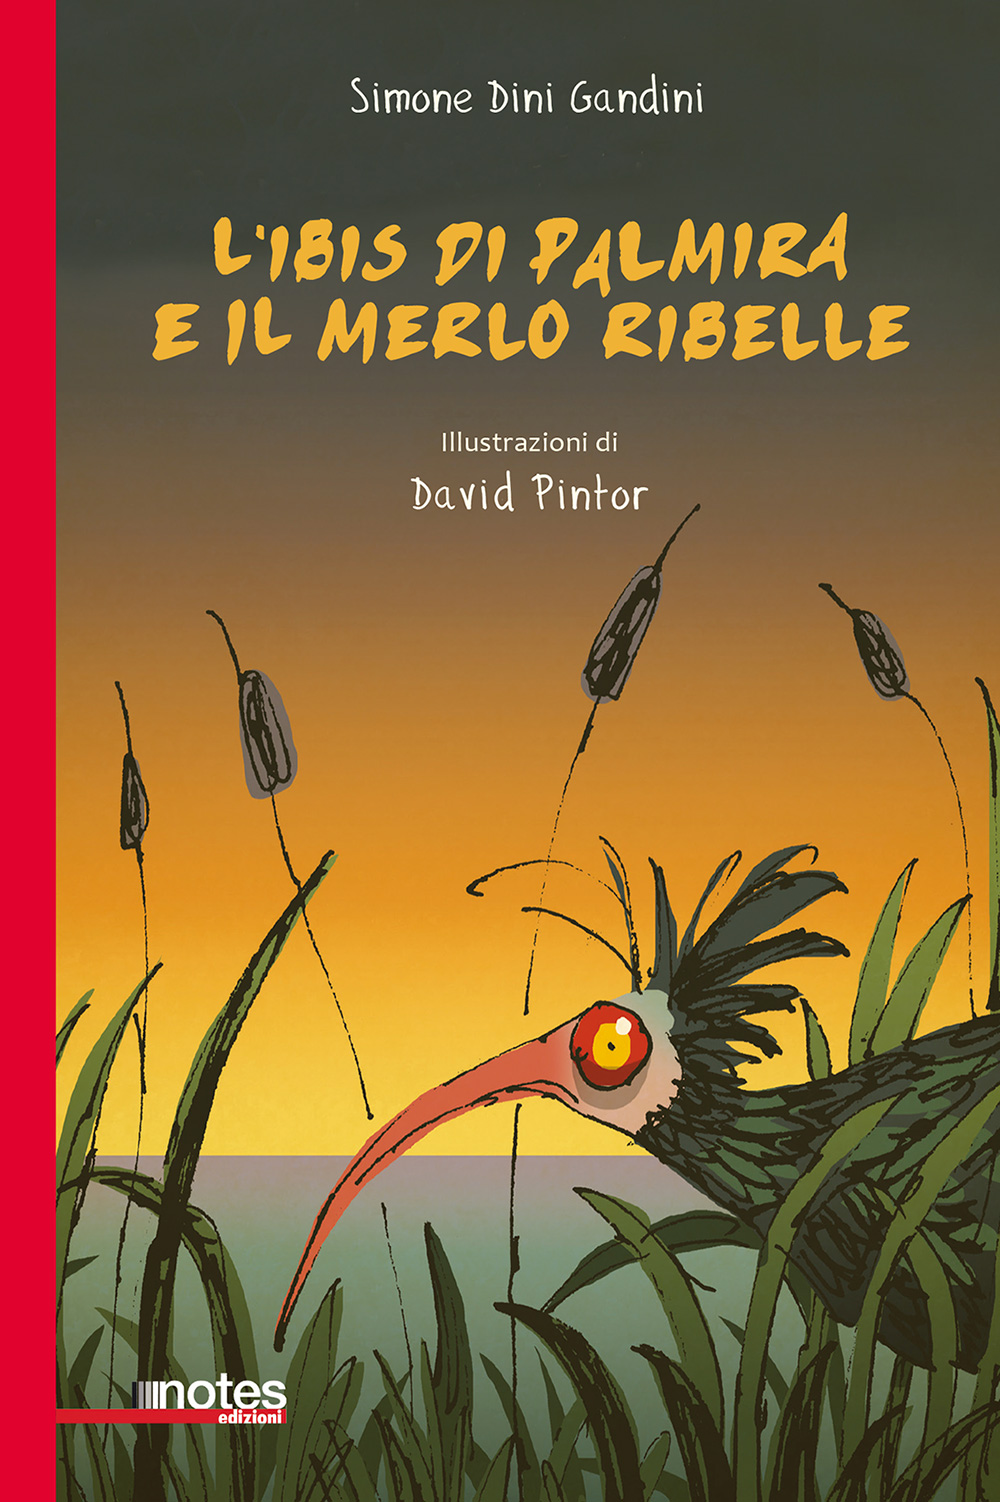 L’Ibis di Palmira e il merlo ribelle, il nuovo libro di Simone Dini Gandini